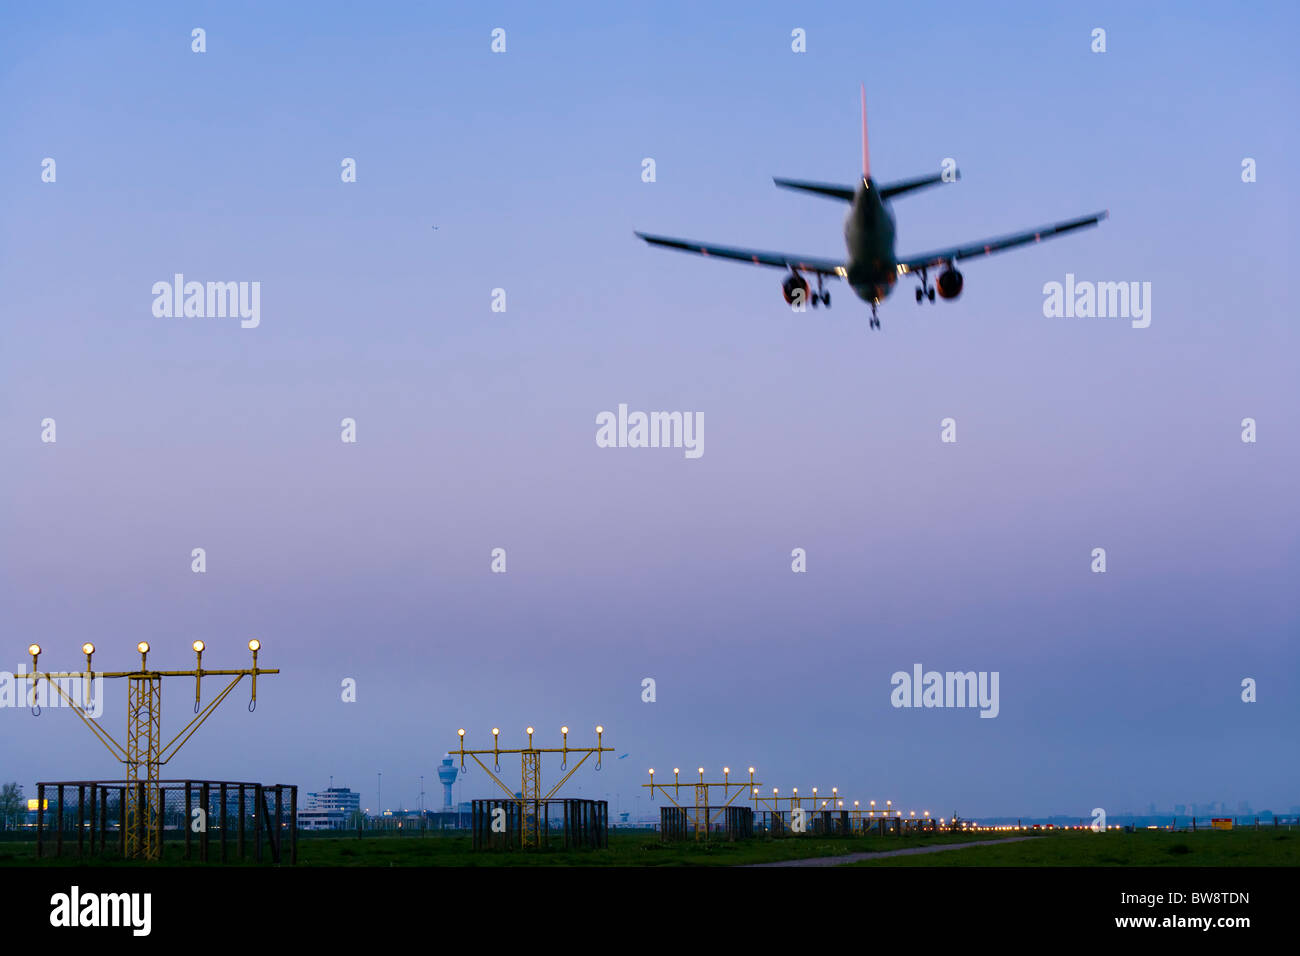 El Aeropuerto Schiphol de Ámsterdam al anochecer. Avión avión aproximándose, aterrizaje en la pista de aterrizaje Kaagbaan. Foto de stock